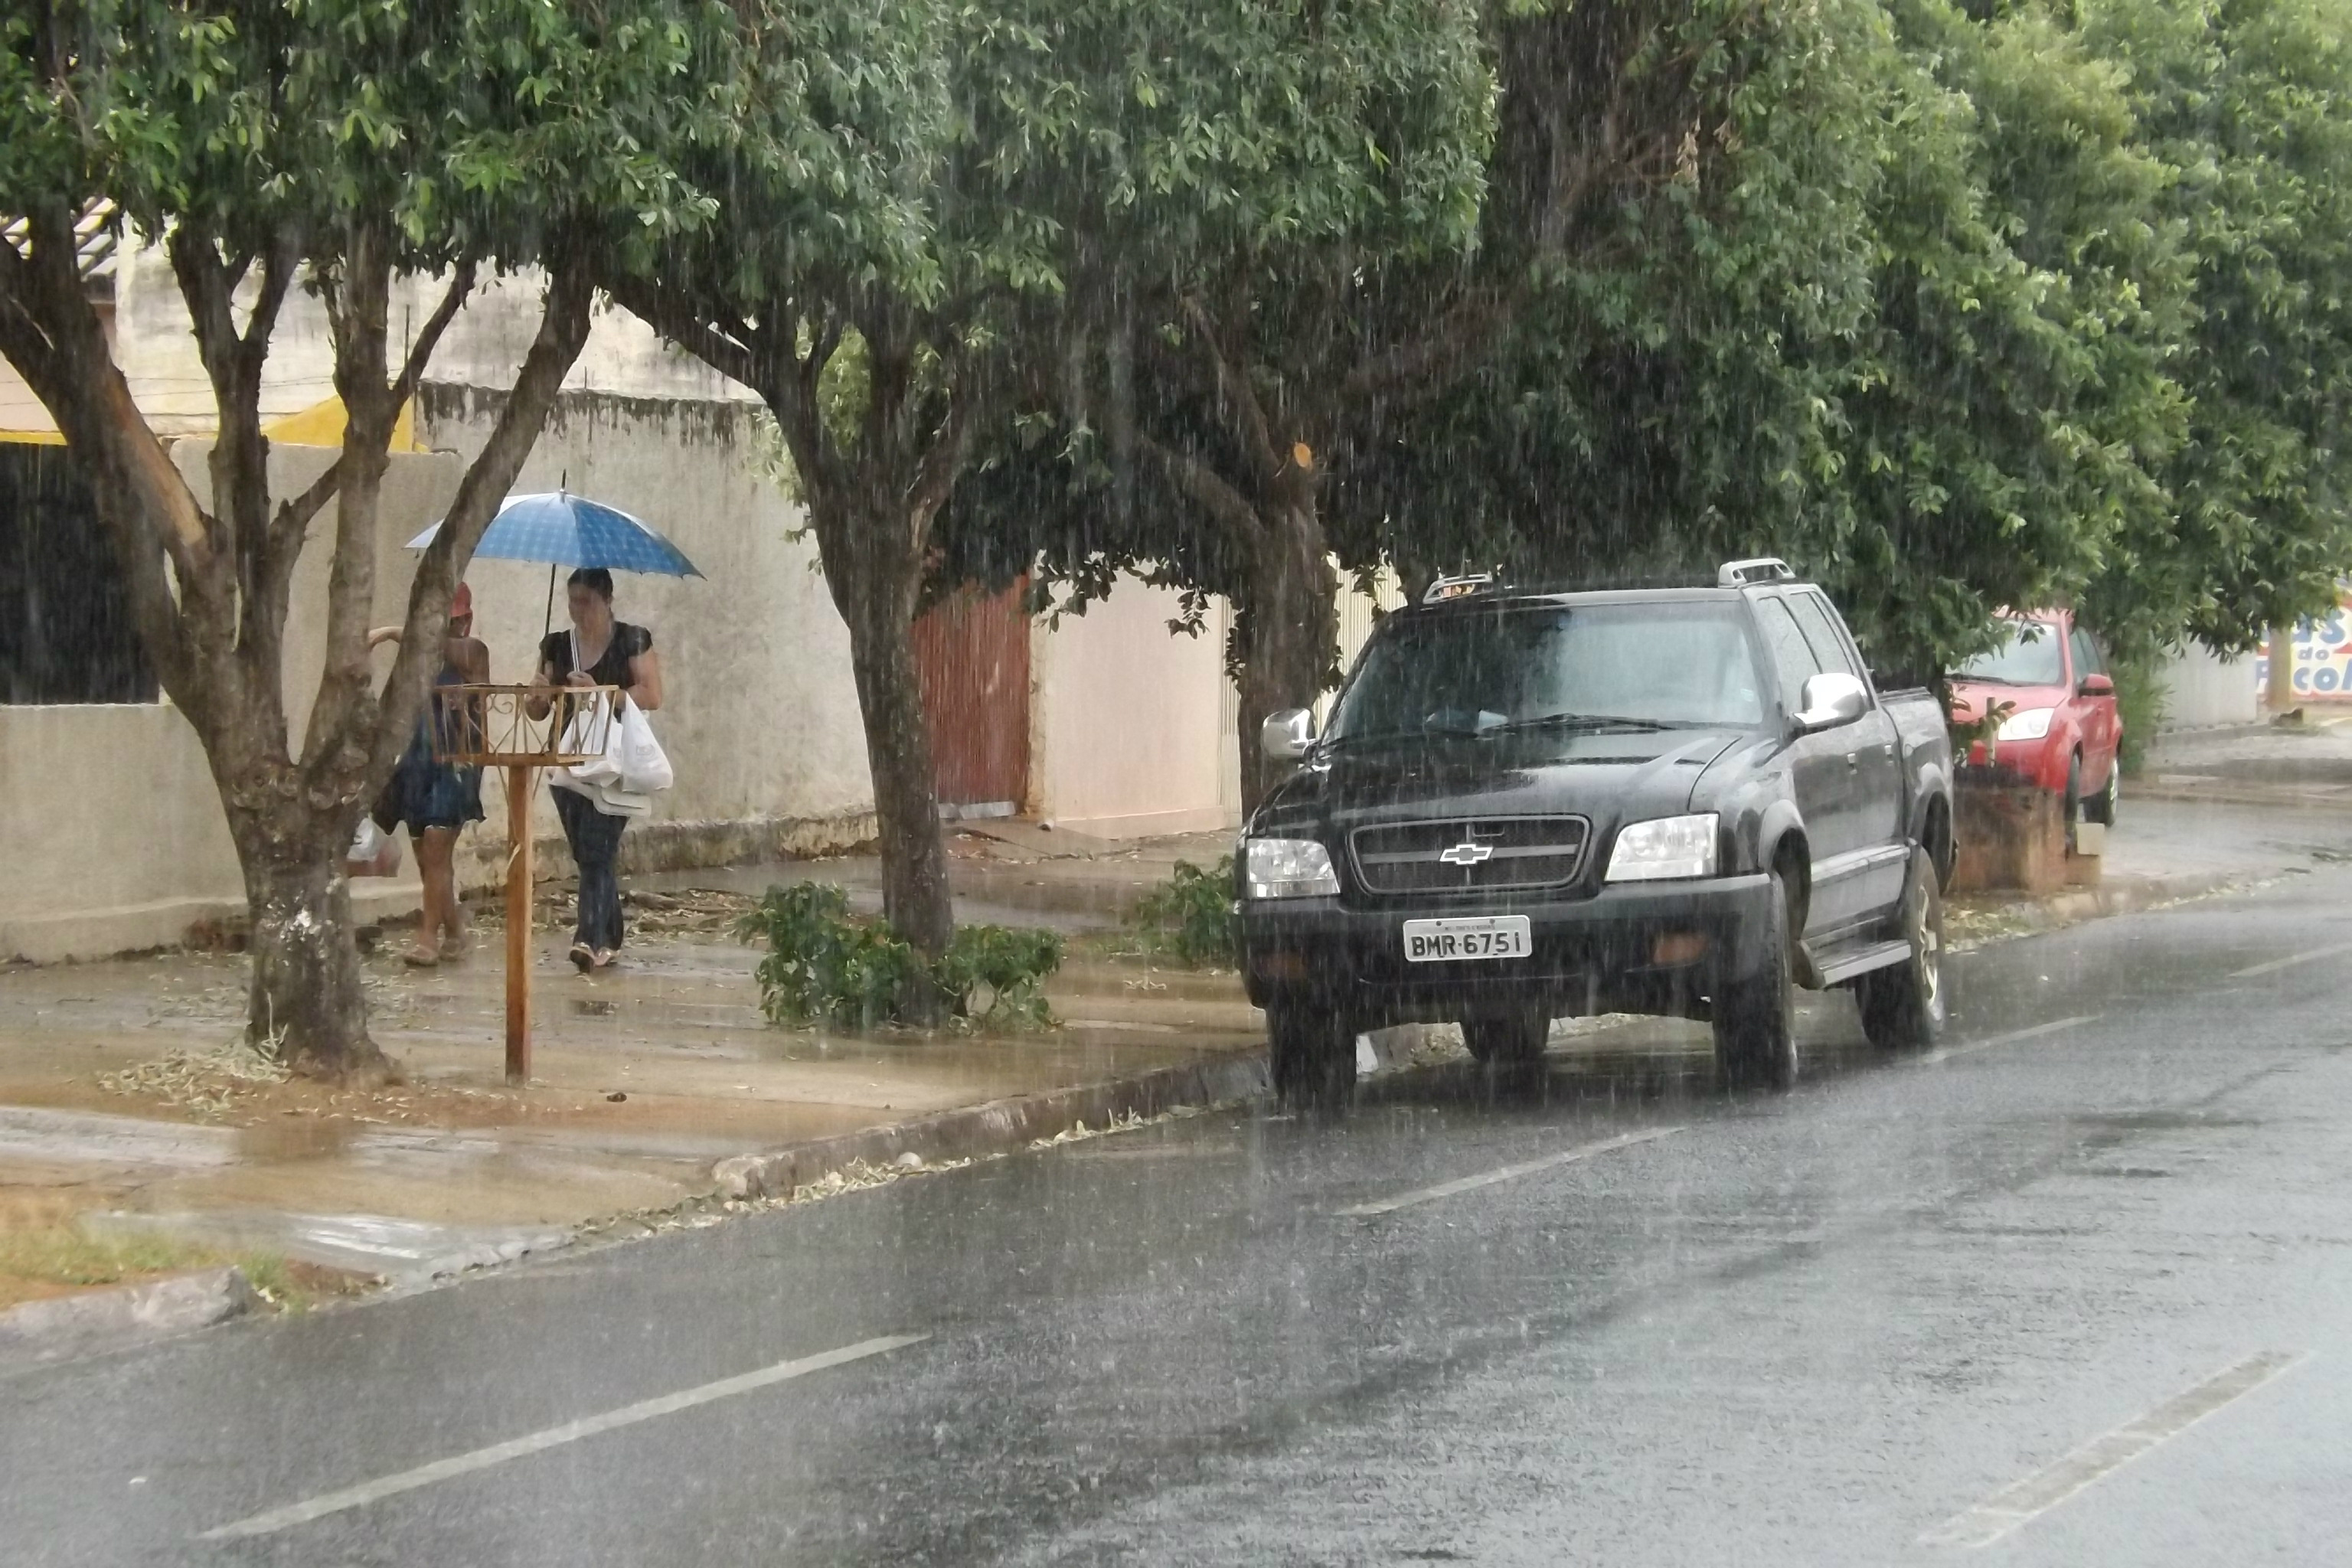 De volta das compras, as amigas disputam o guarda-chuvas que uma delas empunha para andar pela calçada, embaixo de fraca chuva, mas que pode molhar (Foto: Edivelton Kologi)